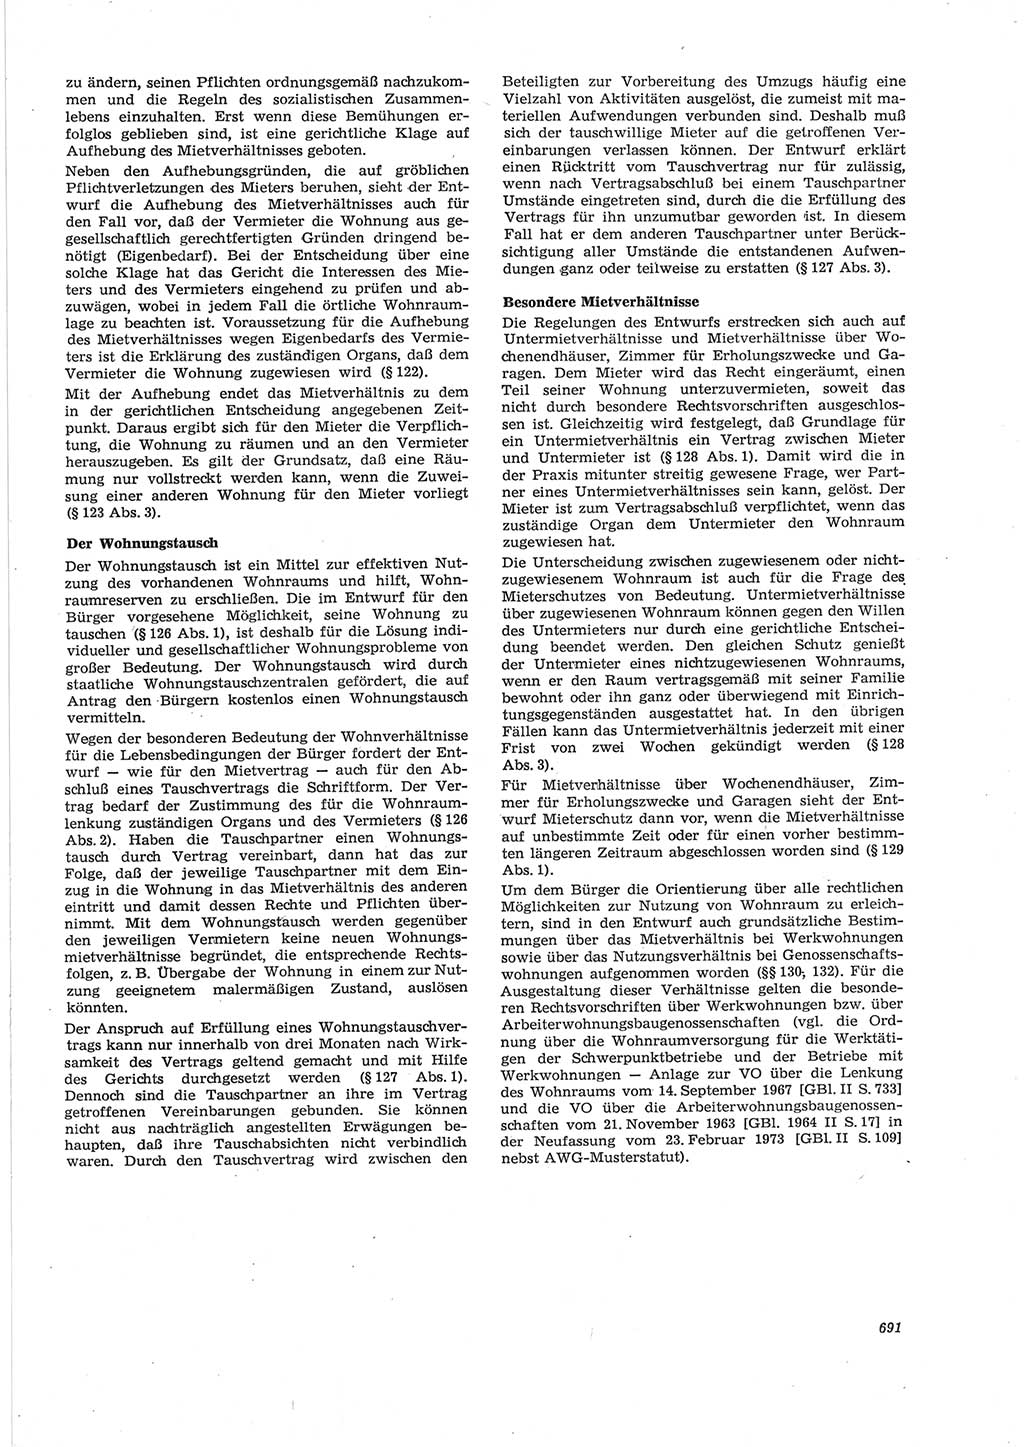 Neue Justiz (NJ), Zeitschrift für Recht und Rechtswissenschaft [Deutsche Demokratische Republik (DDR)], 28. Jahrgang 1974, Seite 691 (NJ DDR 1974, S. 691)